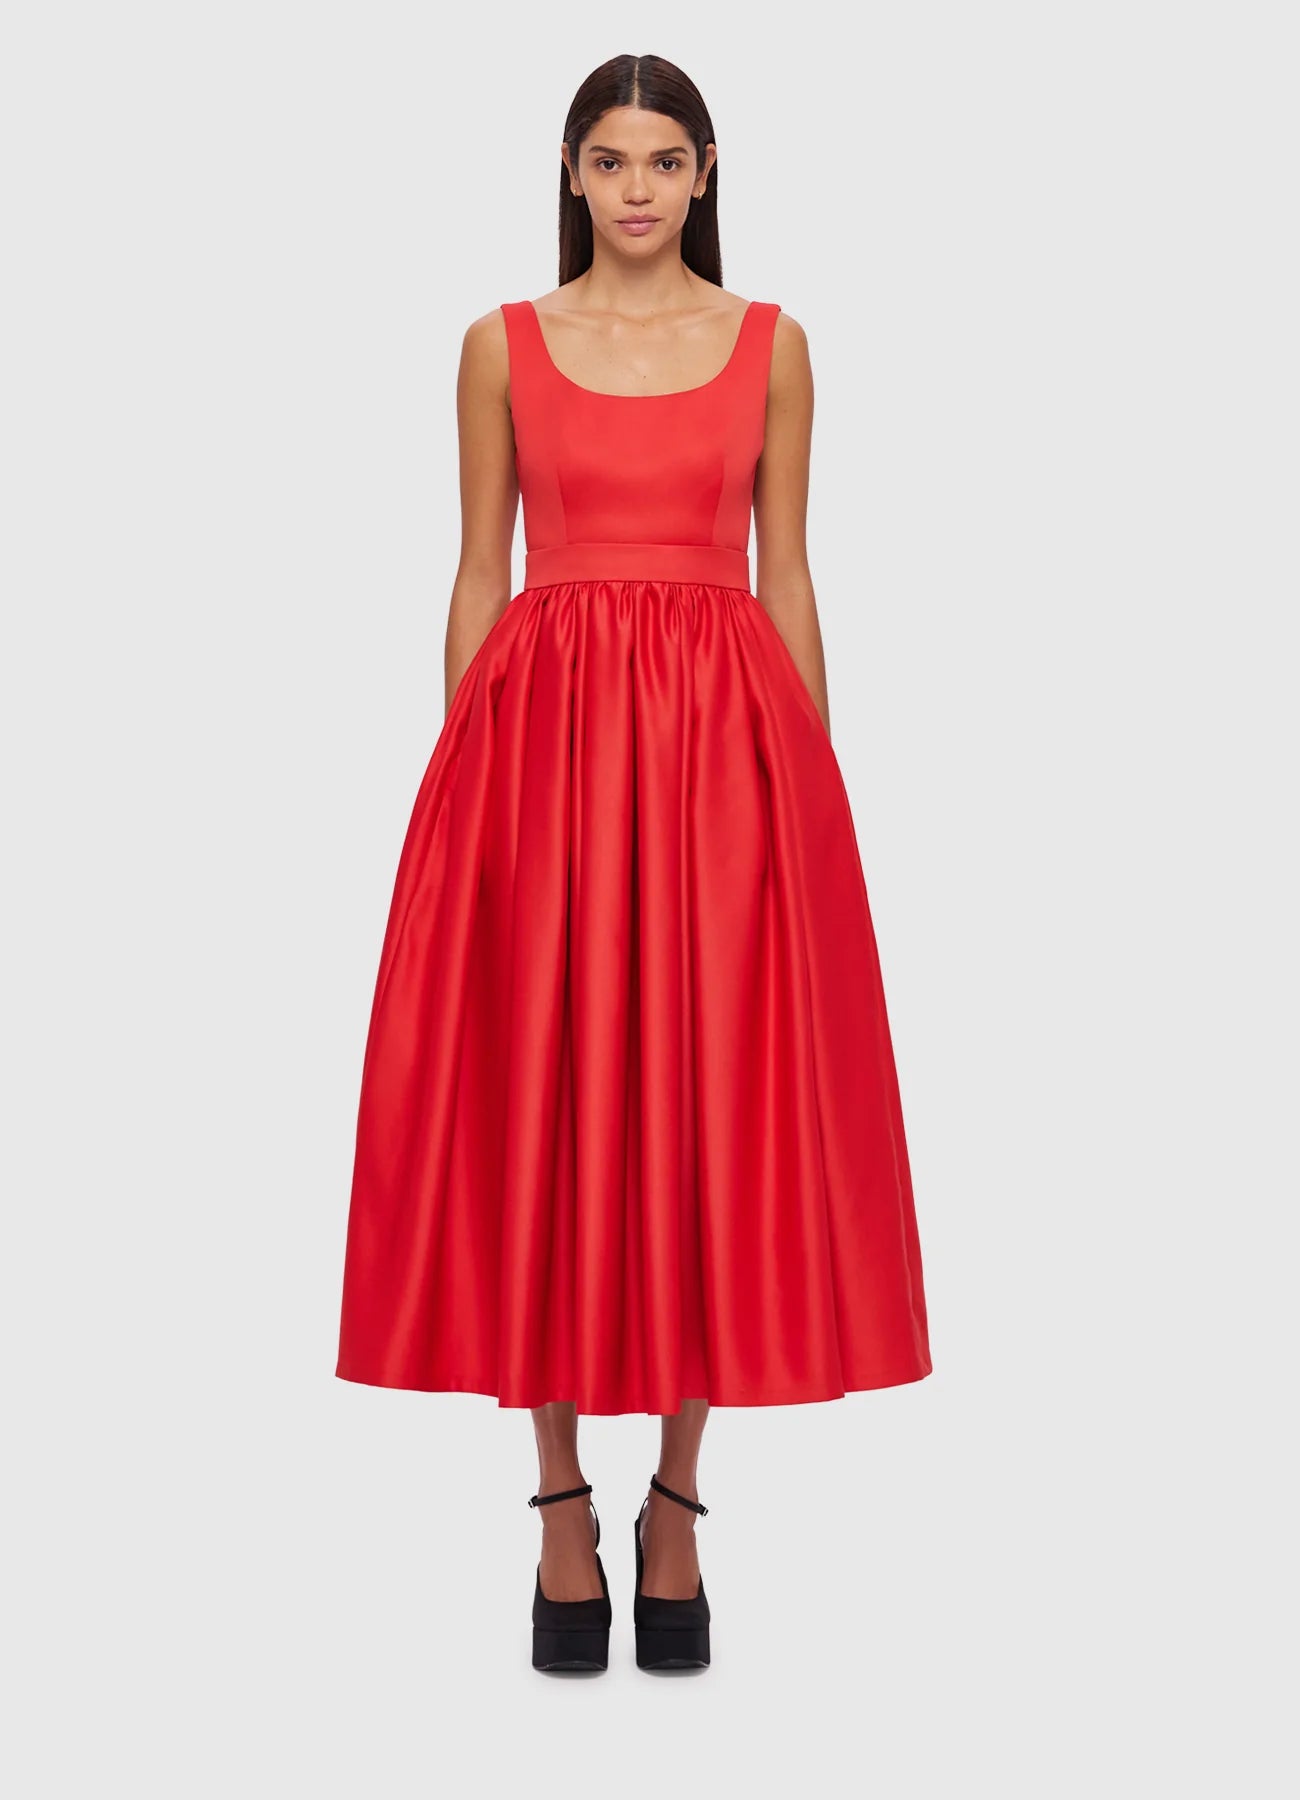 LEO LIN - Colleen Midi Dress in Scarlet